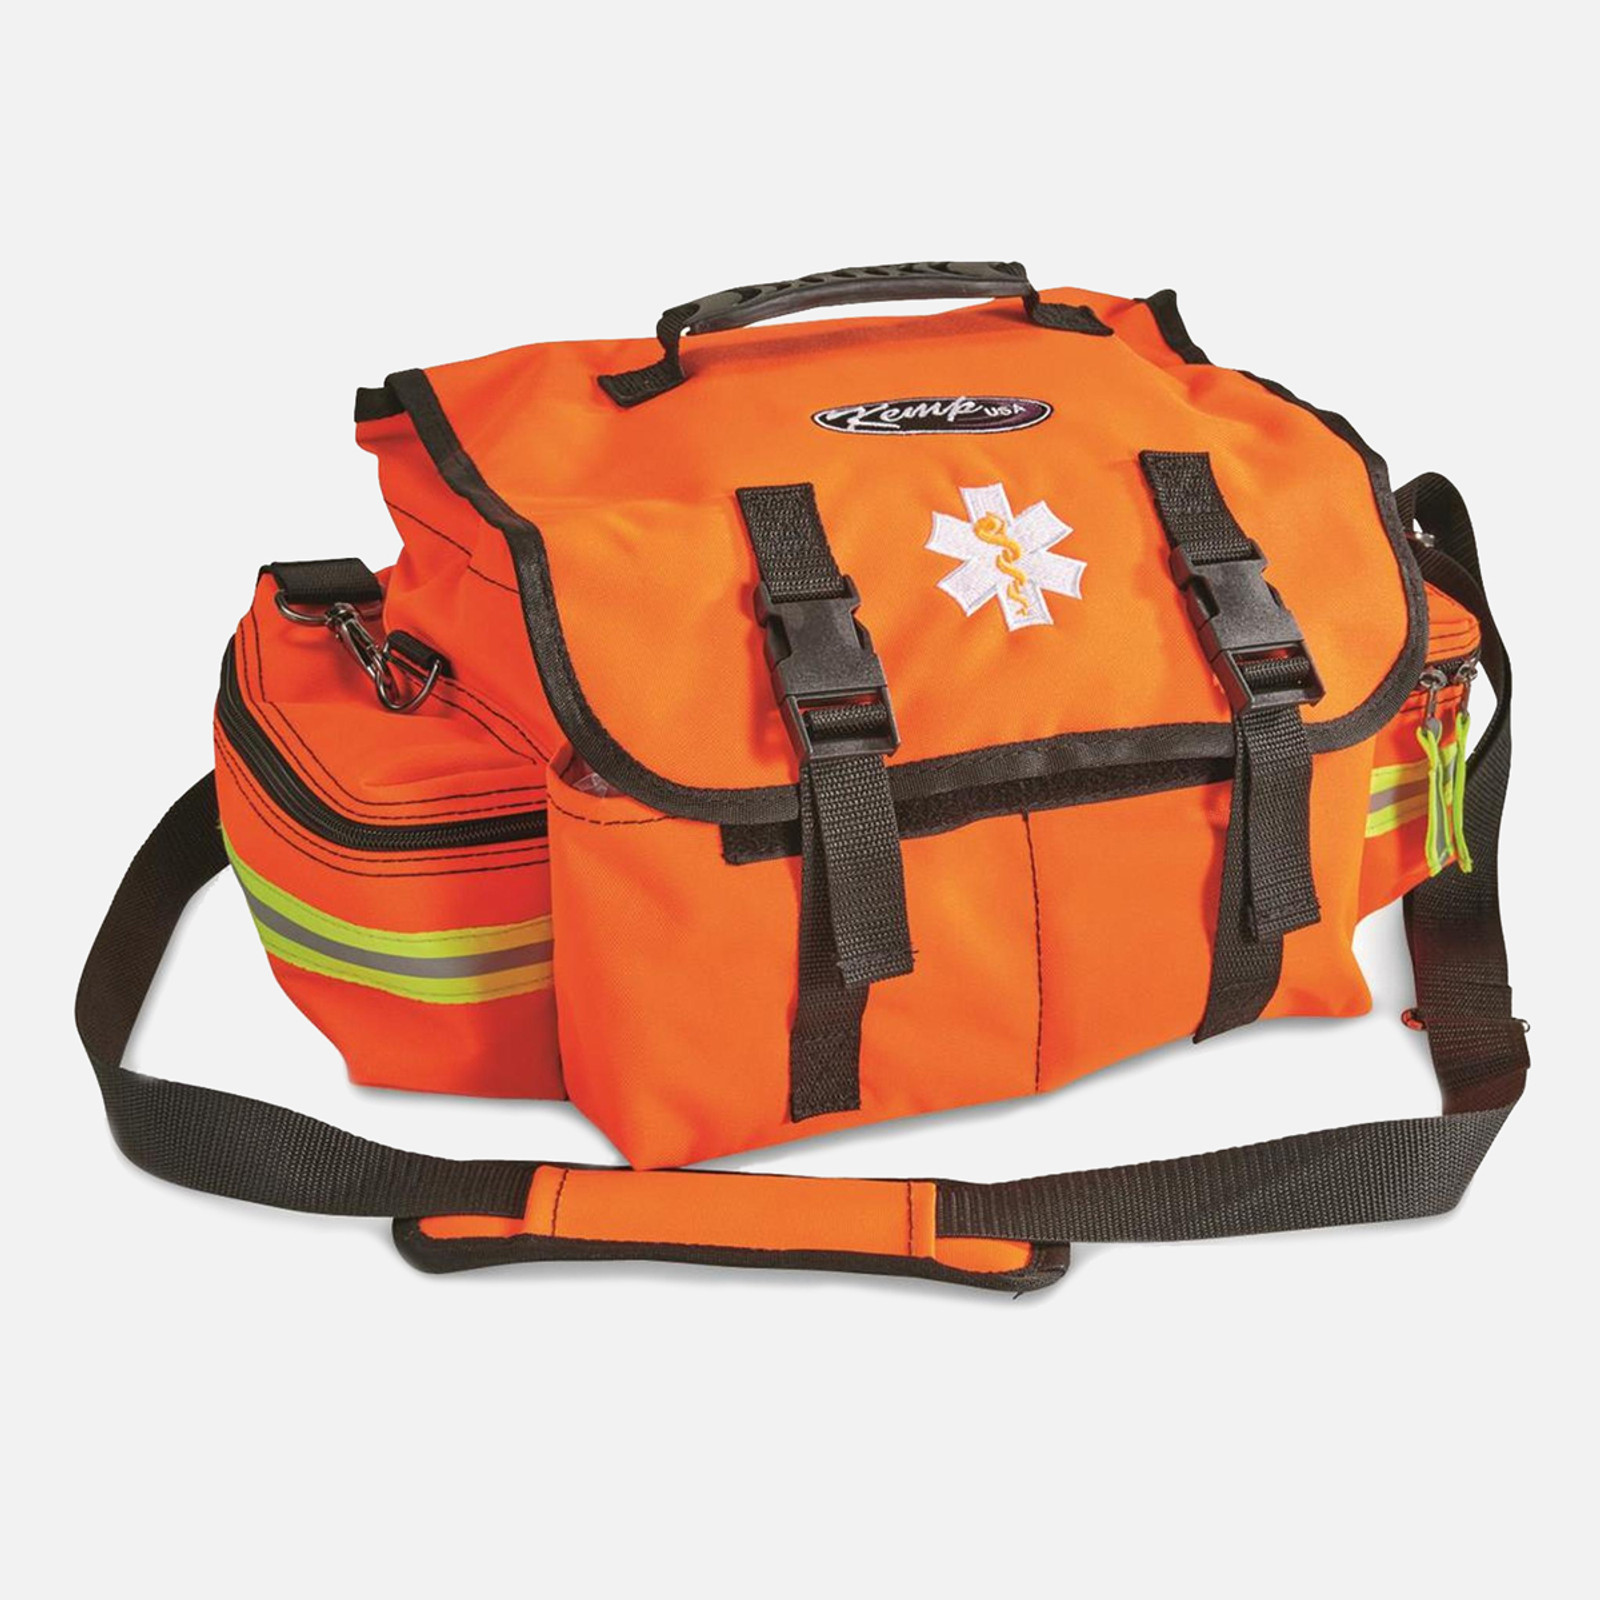 Pro-II Trauma Bag - Elite First Aid